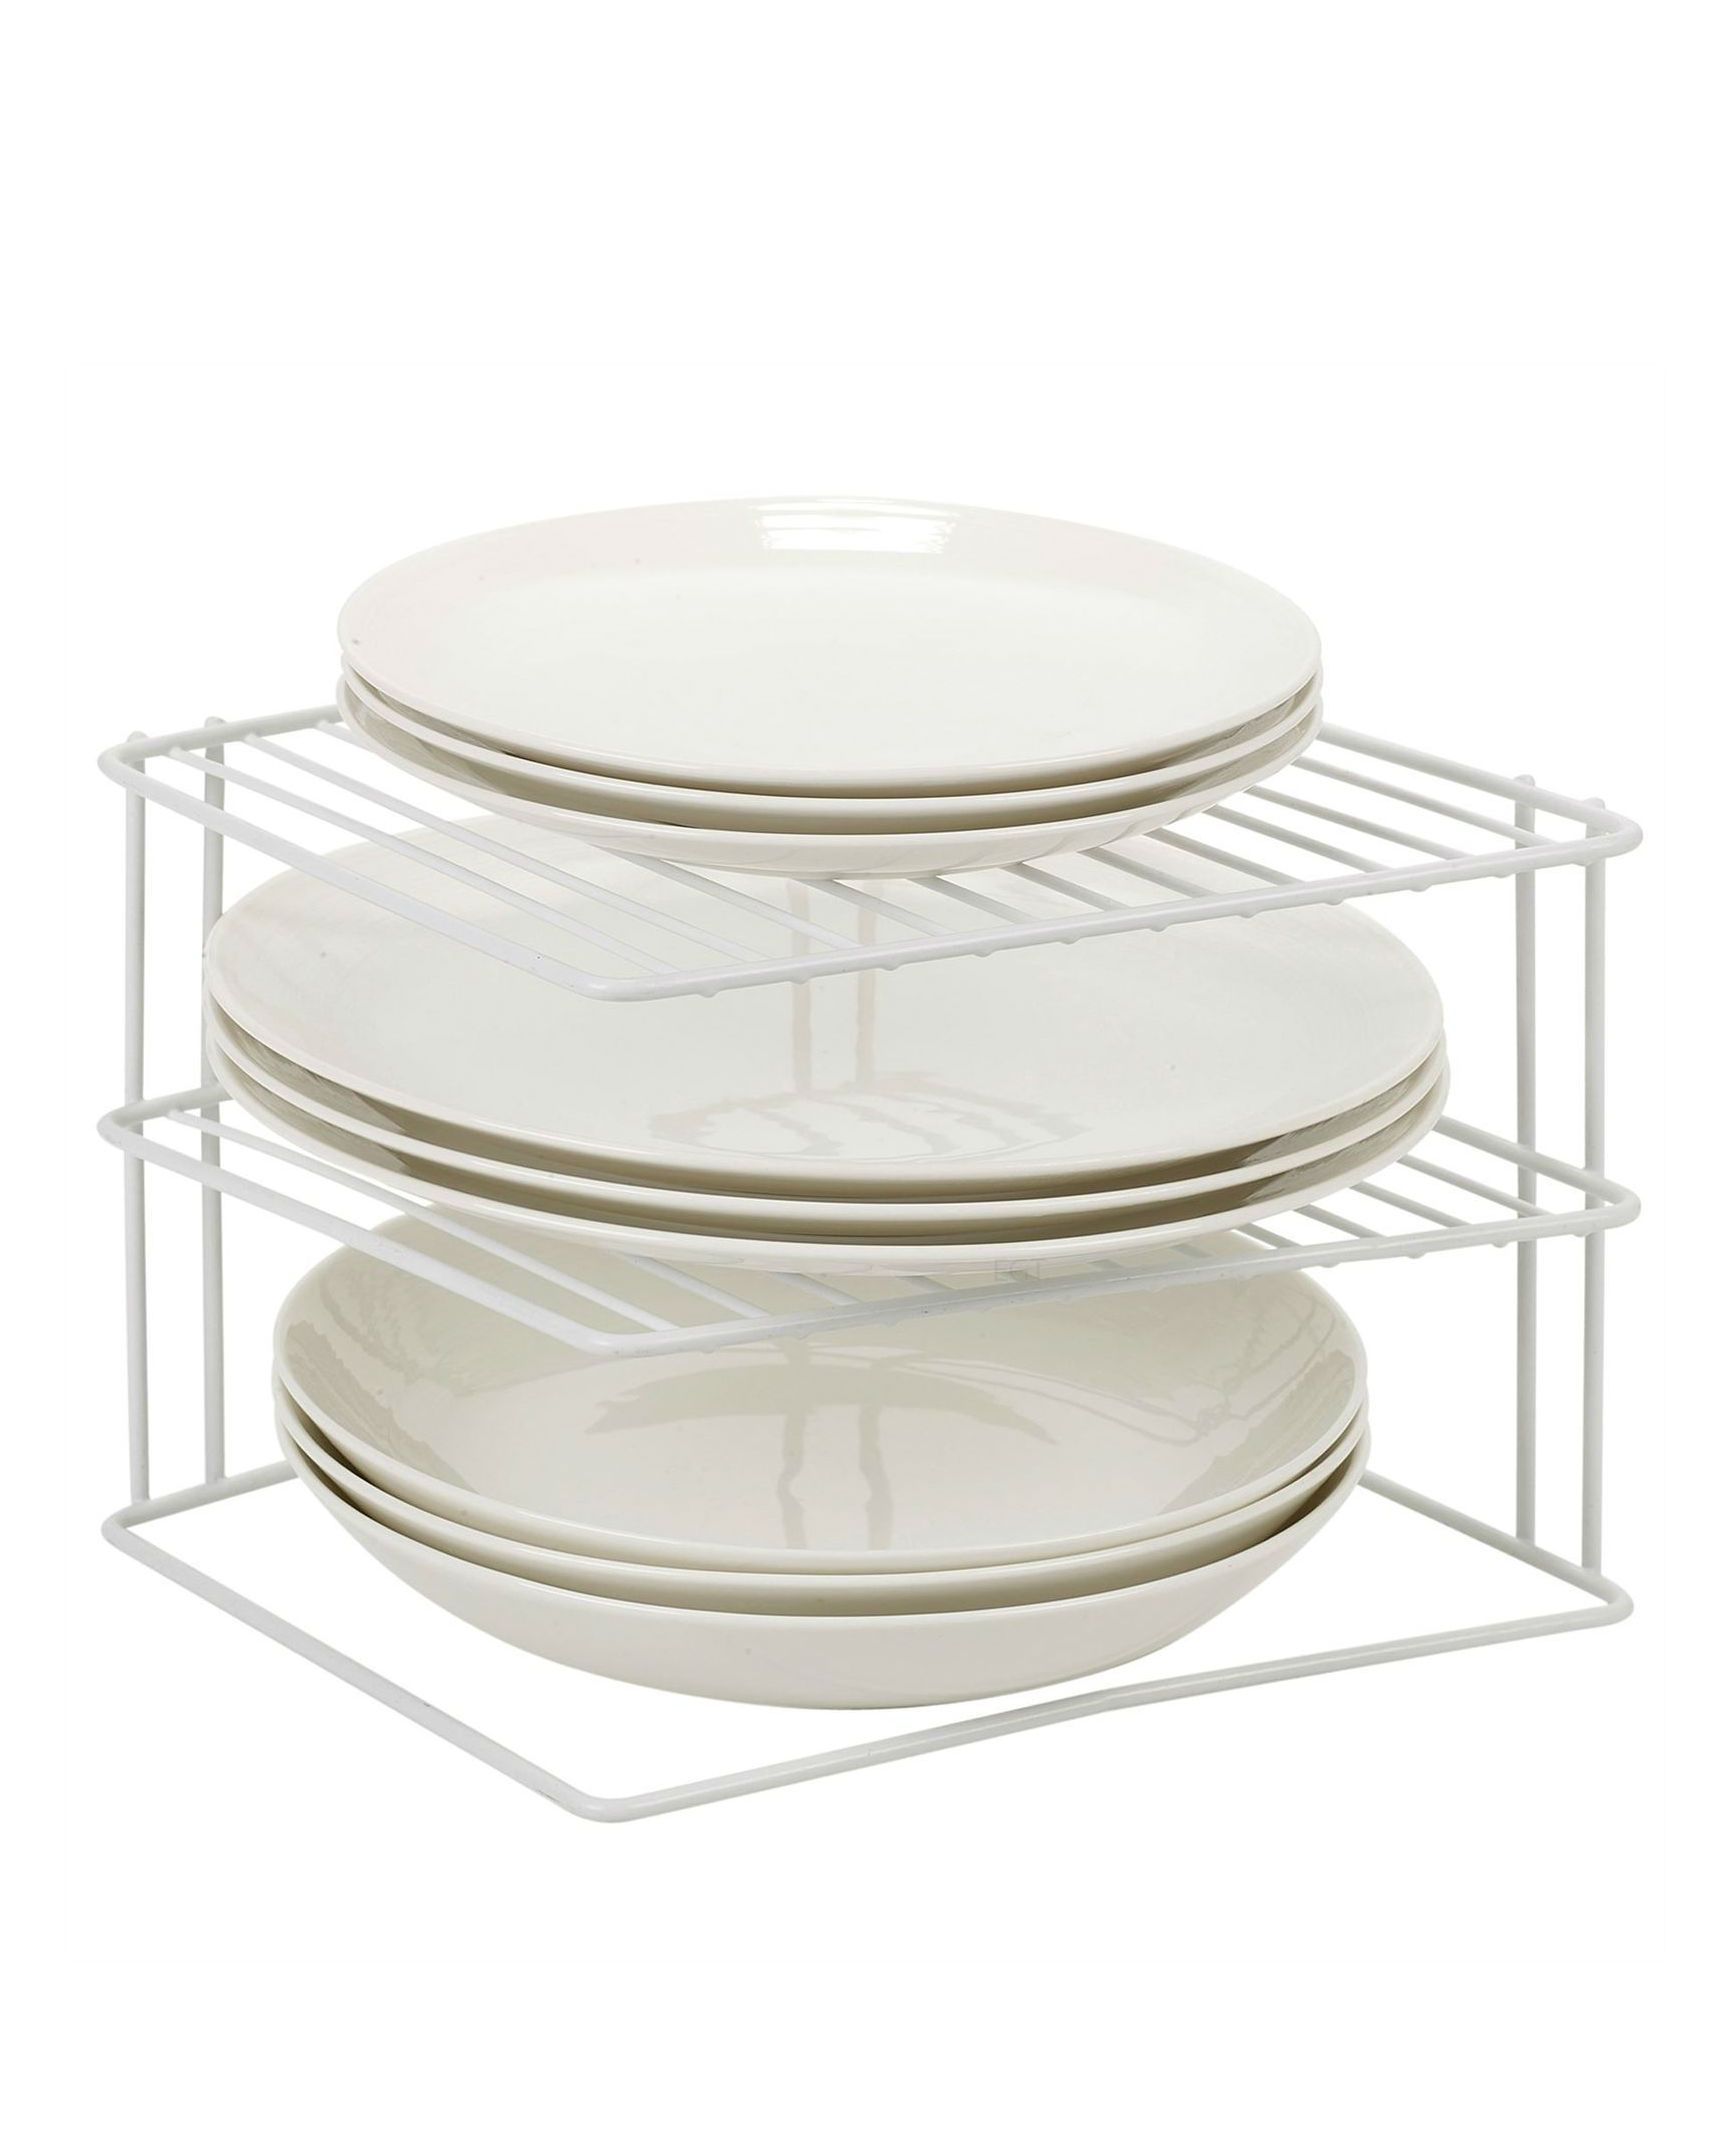 White 3 Tier Corner Shelf Insert Plate Rack Holder Kitchen Cupboard Storage Unit White Metal